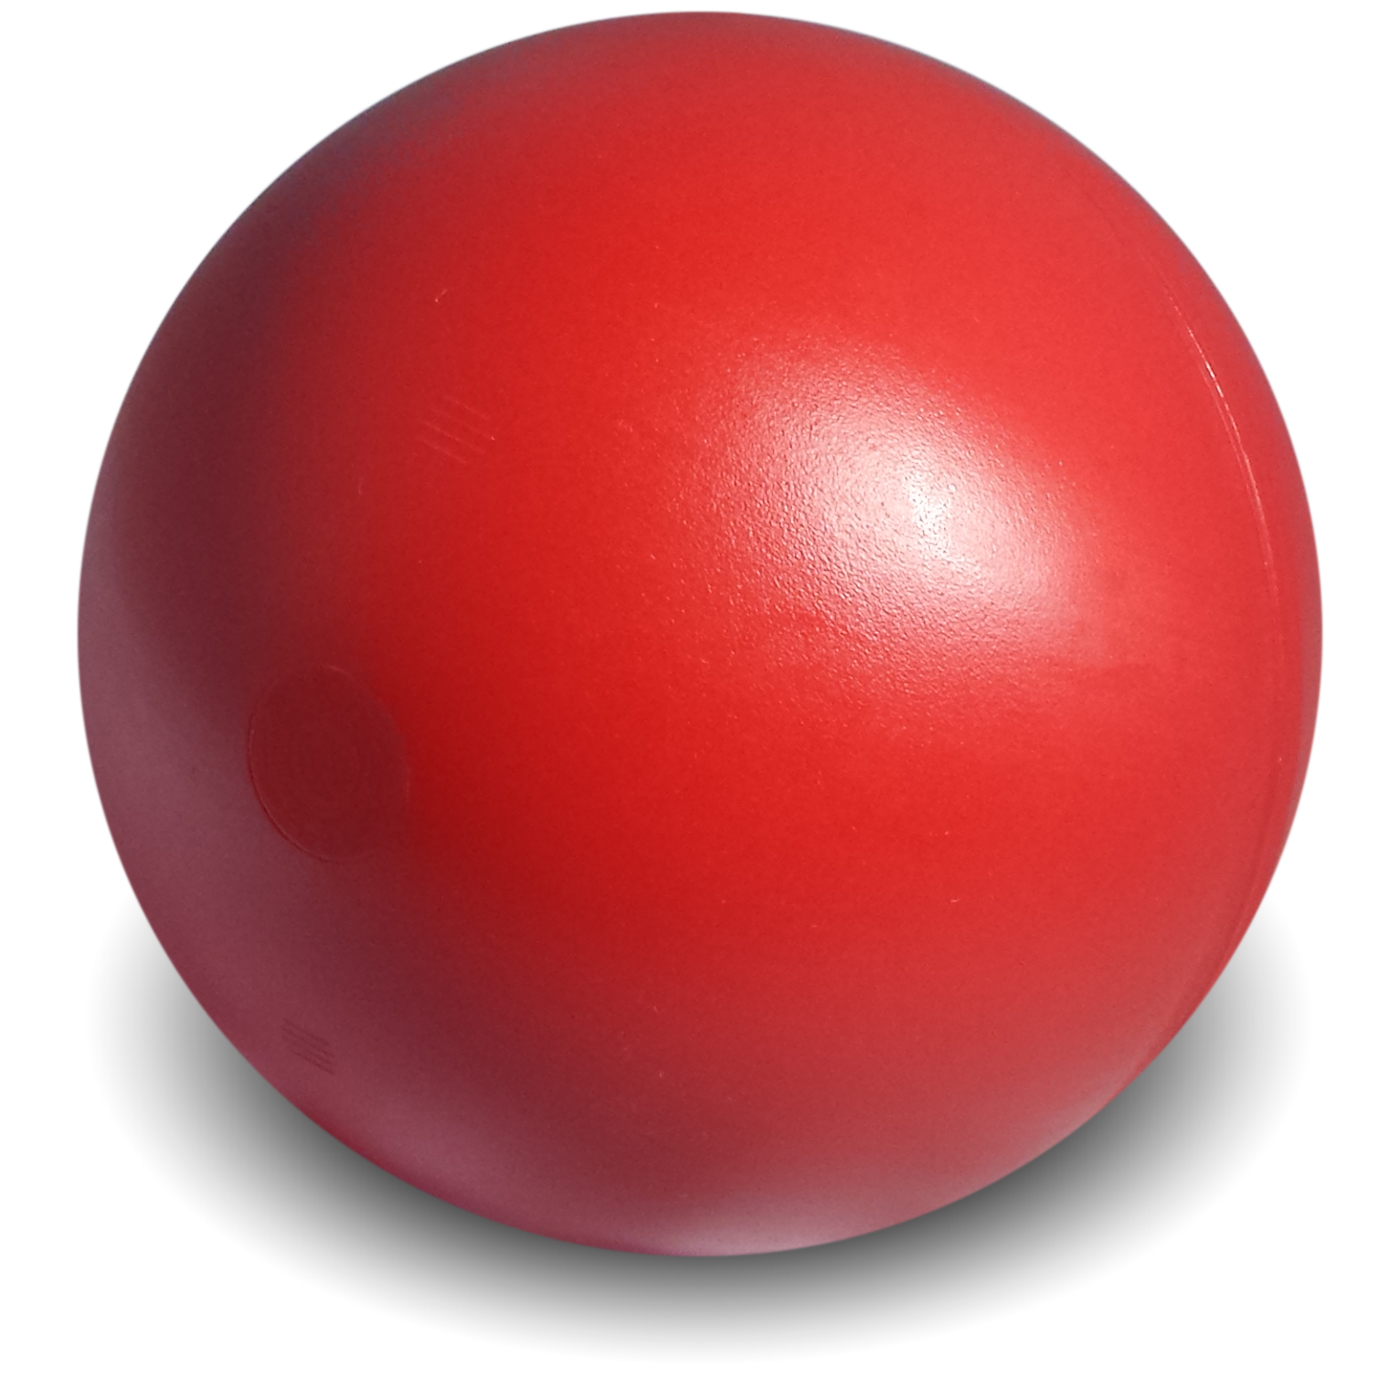 Redball. Красный мяч. Красный круглый шар. Красный мячик 4. Мячик и шар красные.